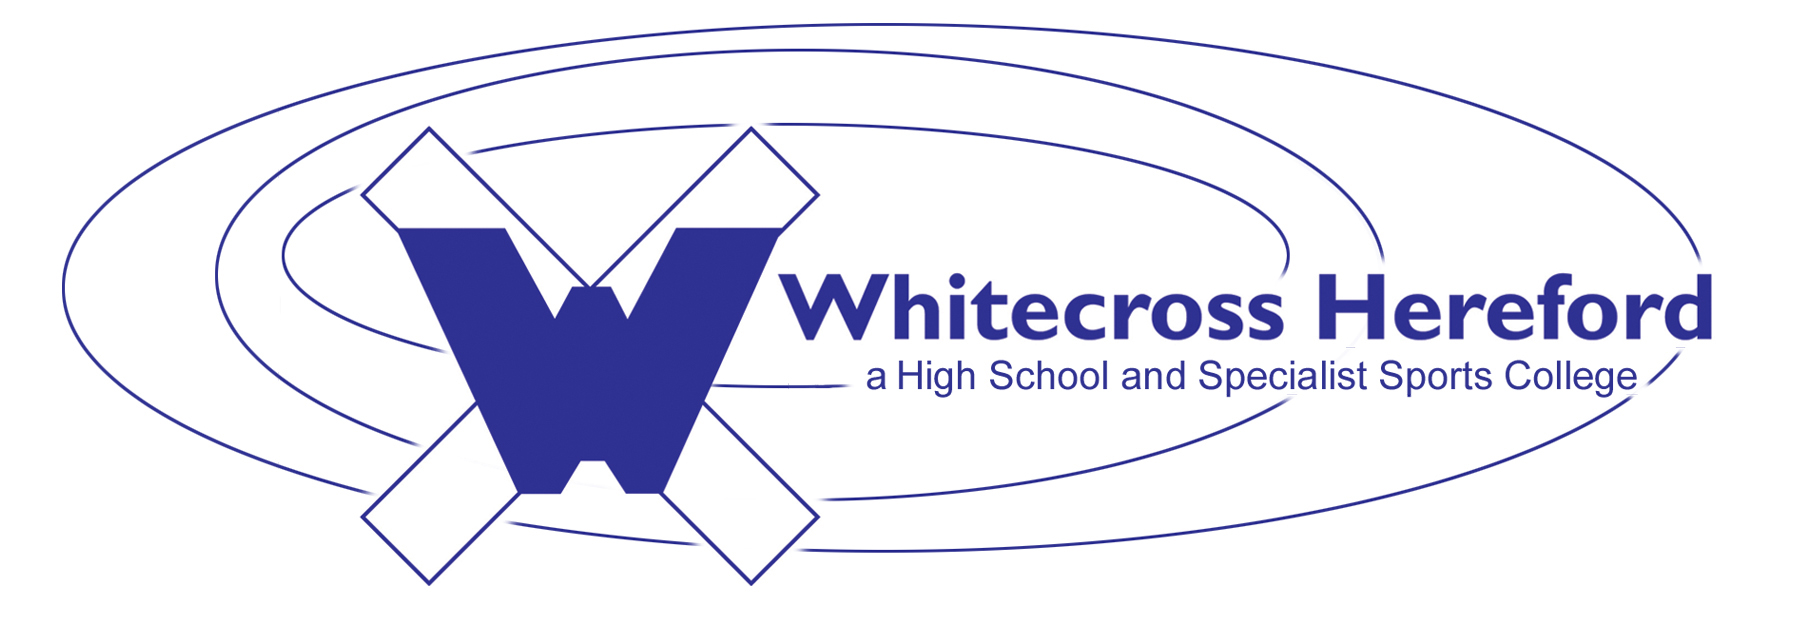 Whitecross Hereford校徽